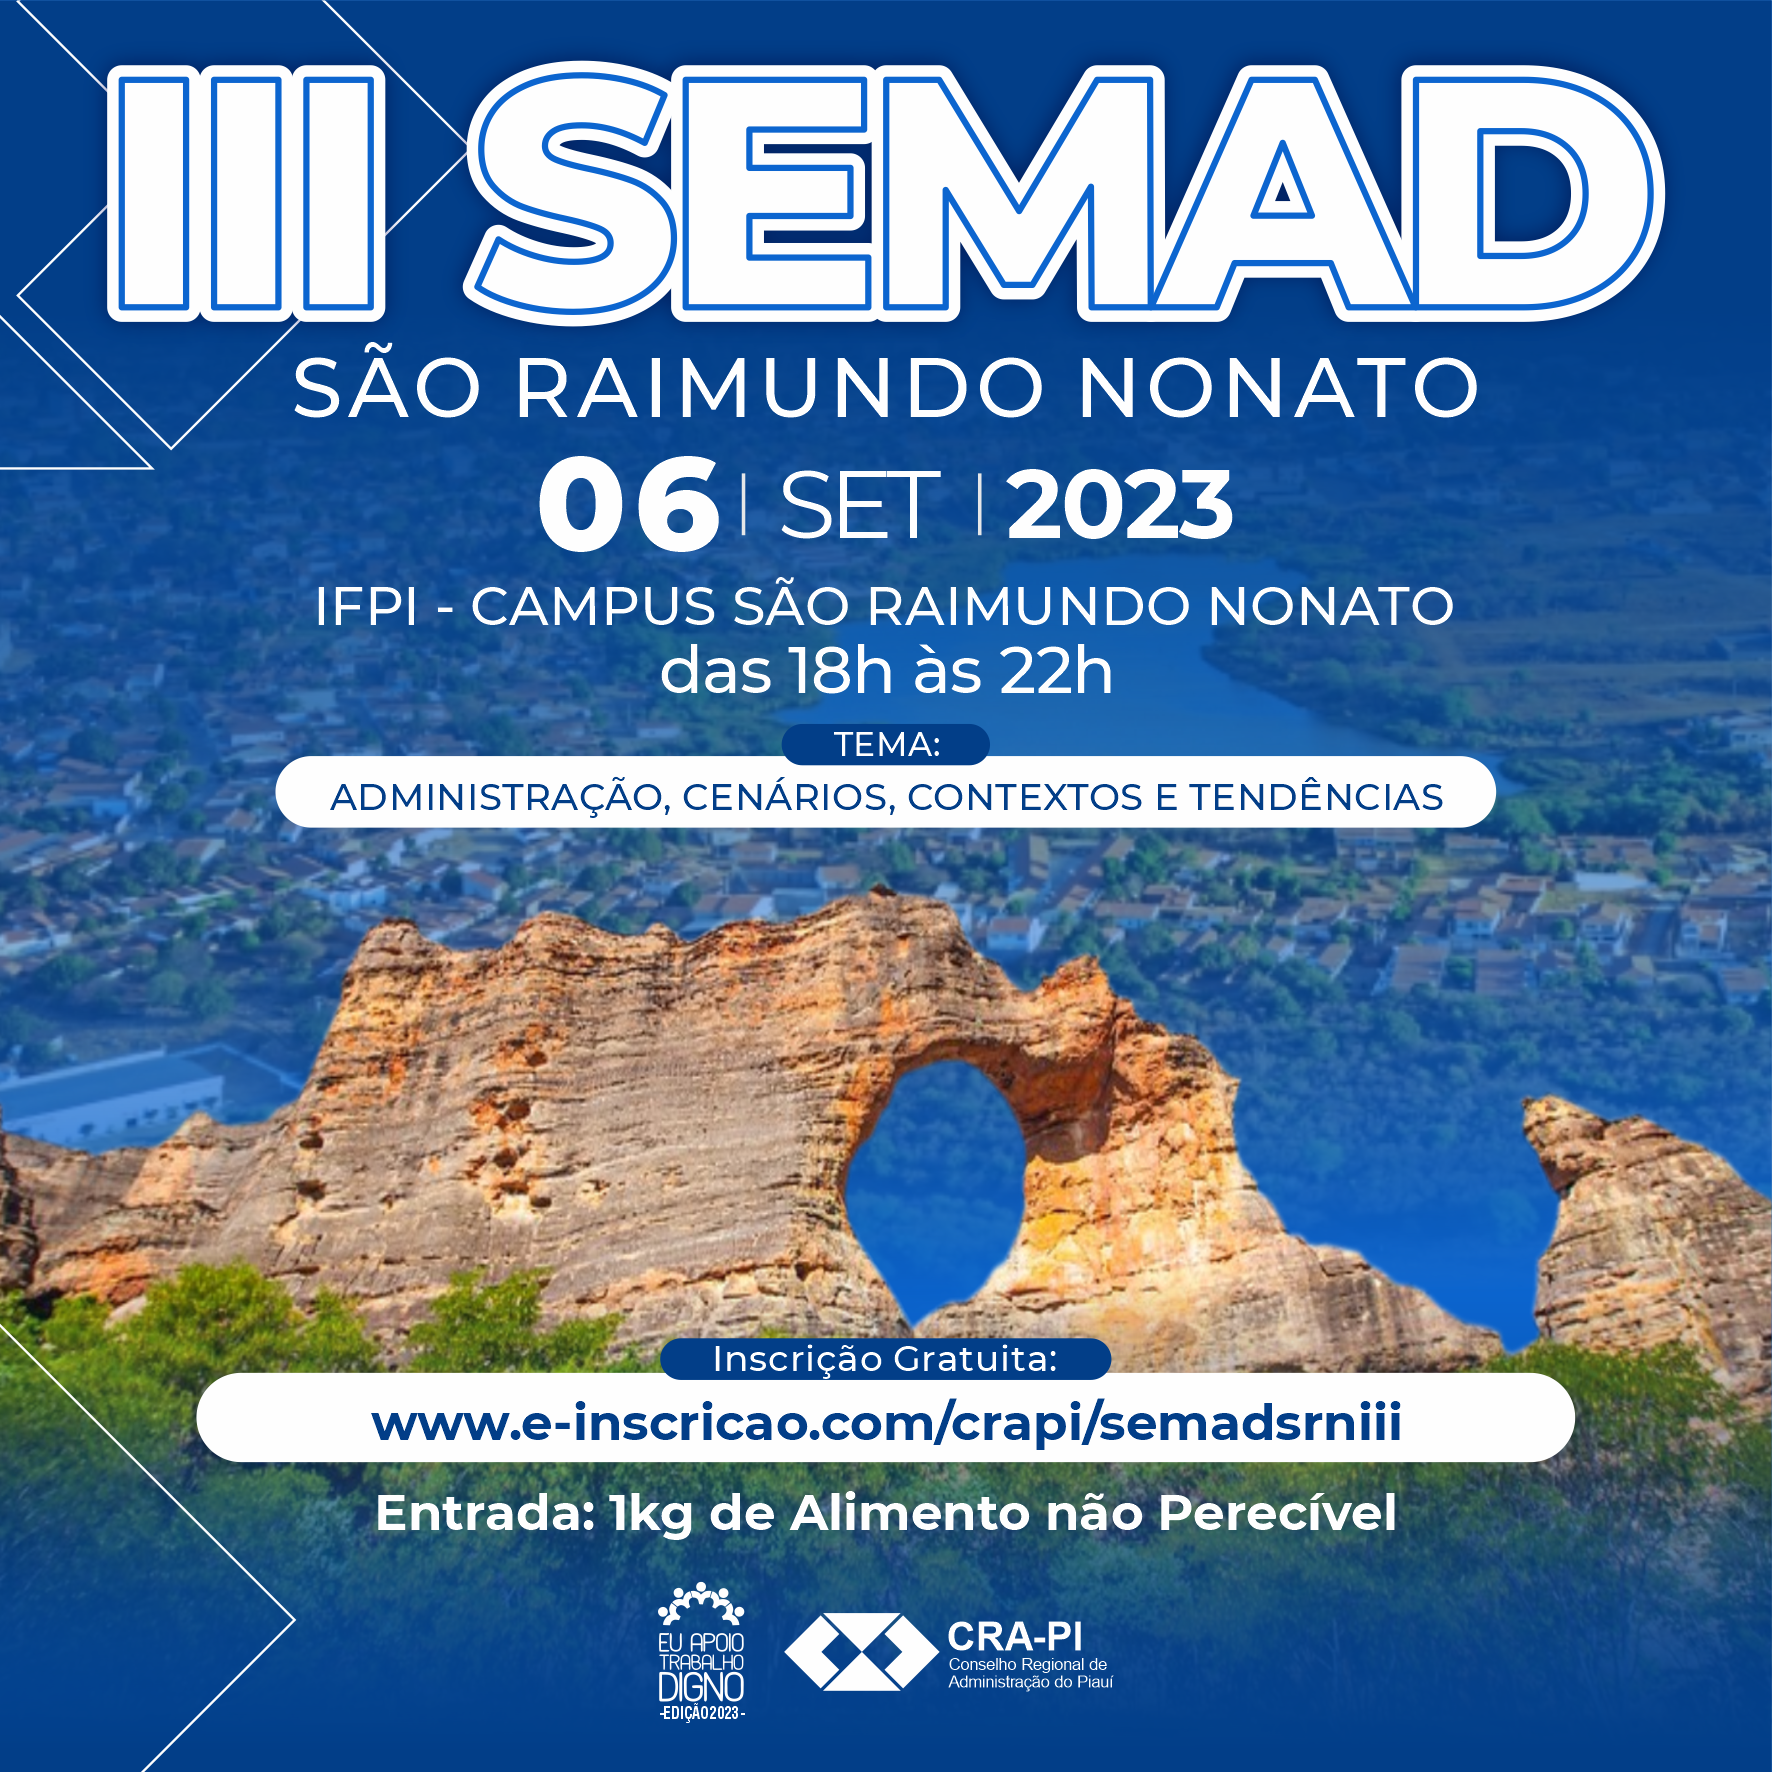 III SEMAD SÃO RAIMUNDO NONATO